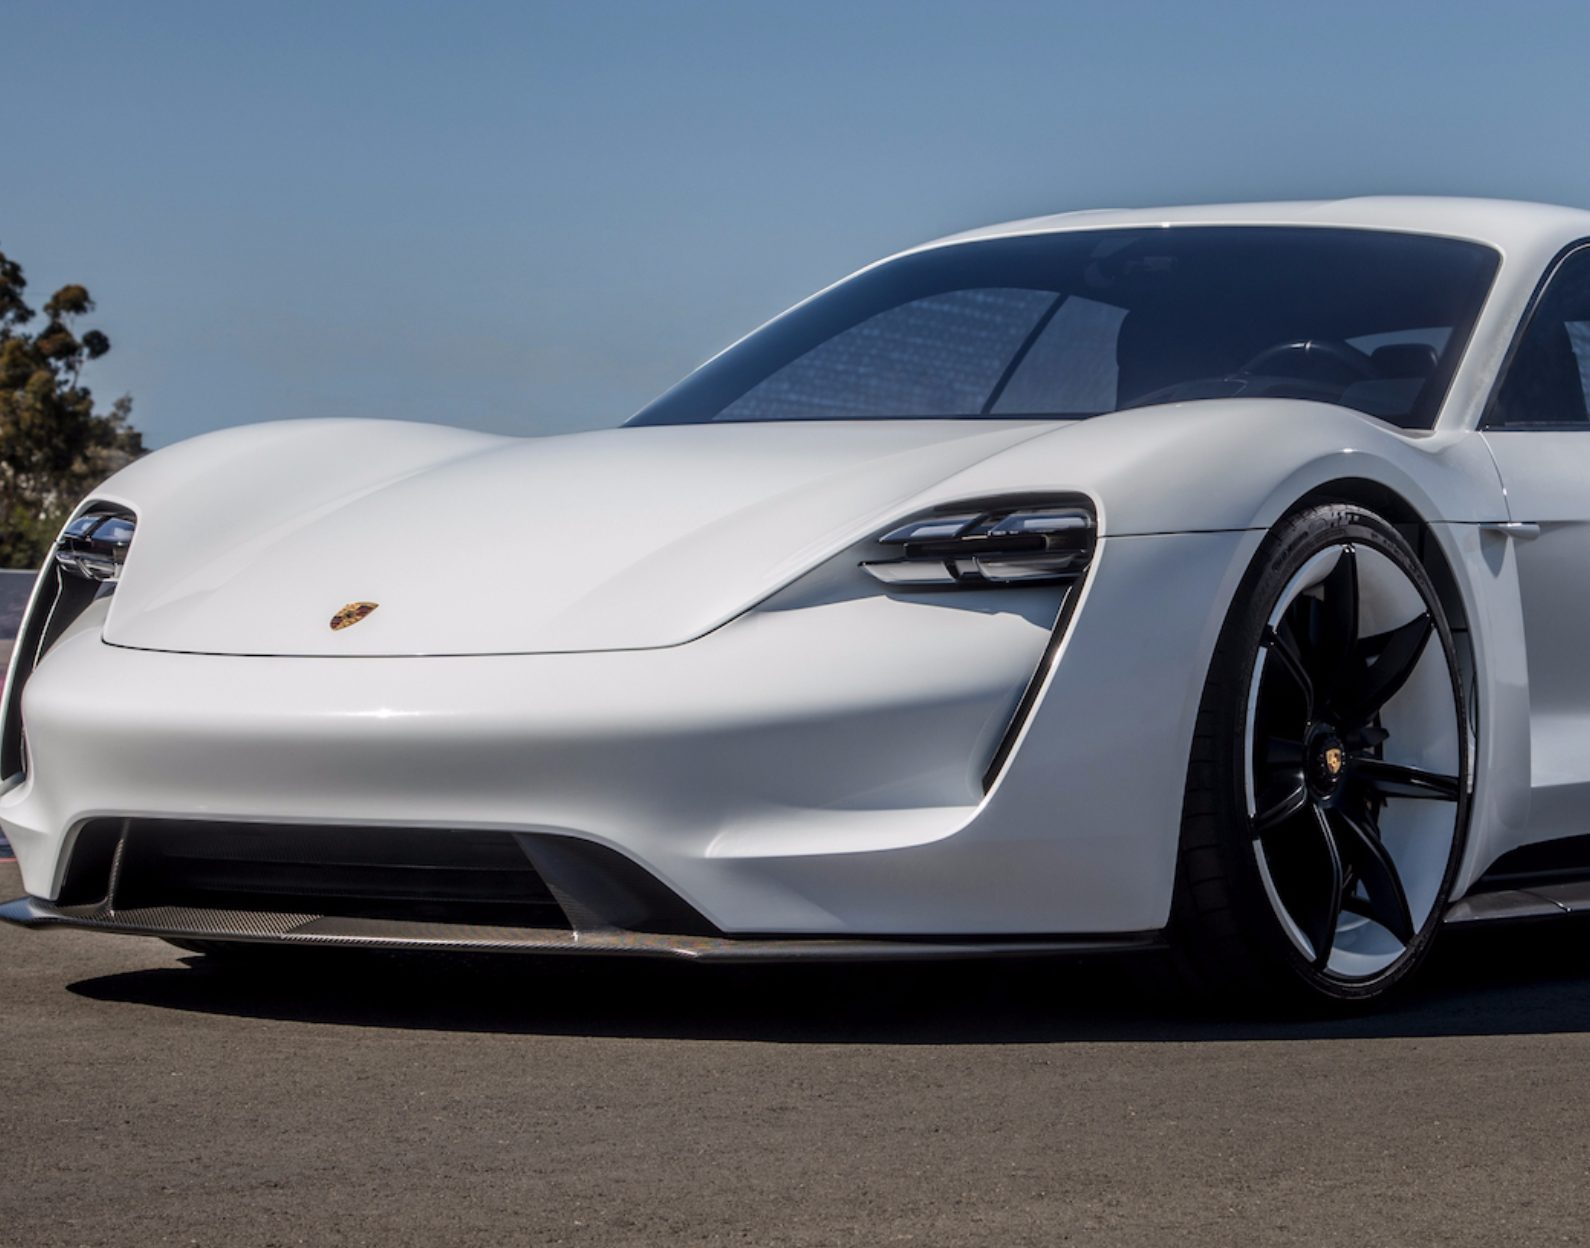 Business Insider bekeek een aantal elektrische auto's die binnenkort uitkomen en vergeleek ze op actieradius én prijs. De genoemde modellen staan gepland voor een release tussen november 2019 en maart 2020.